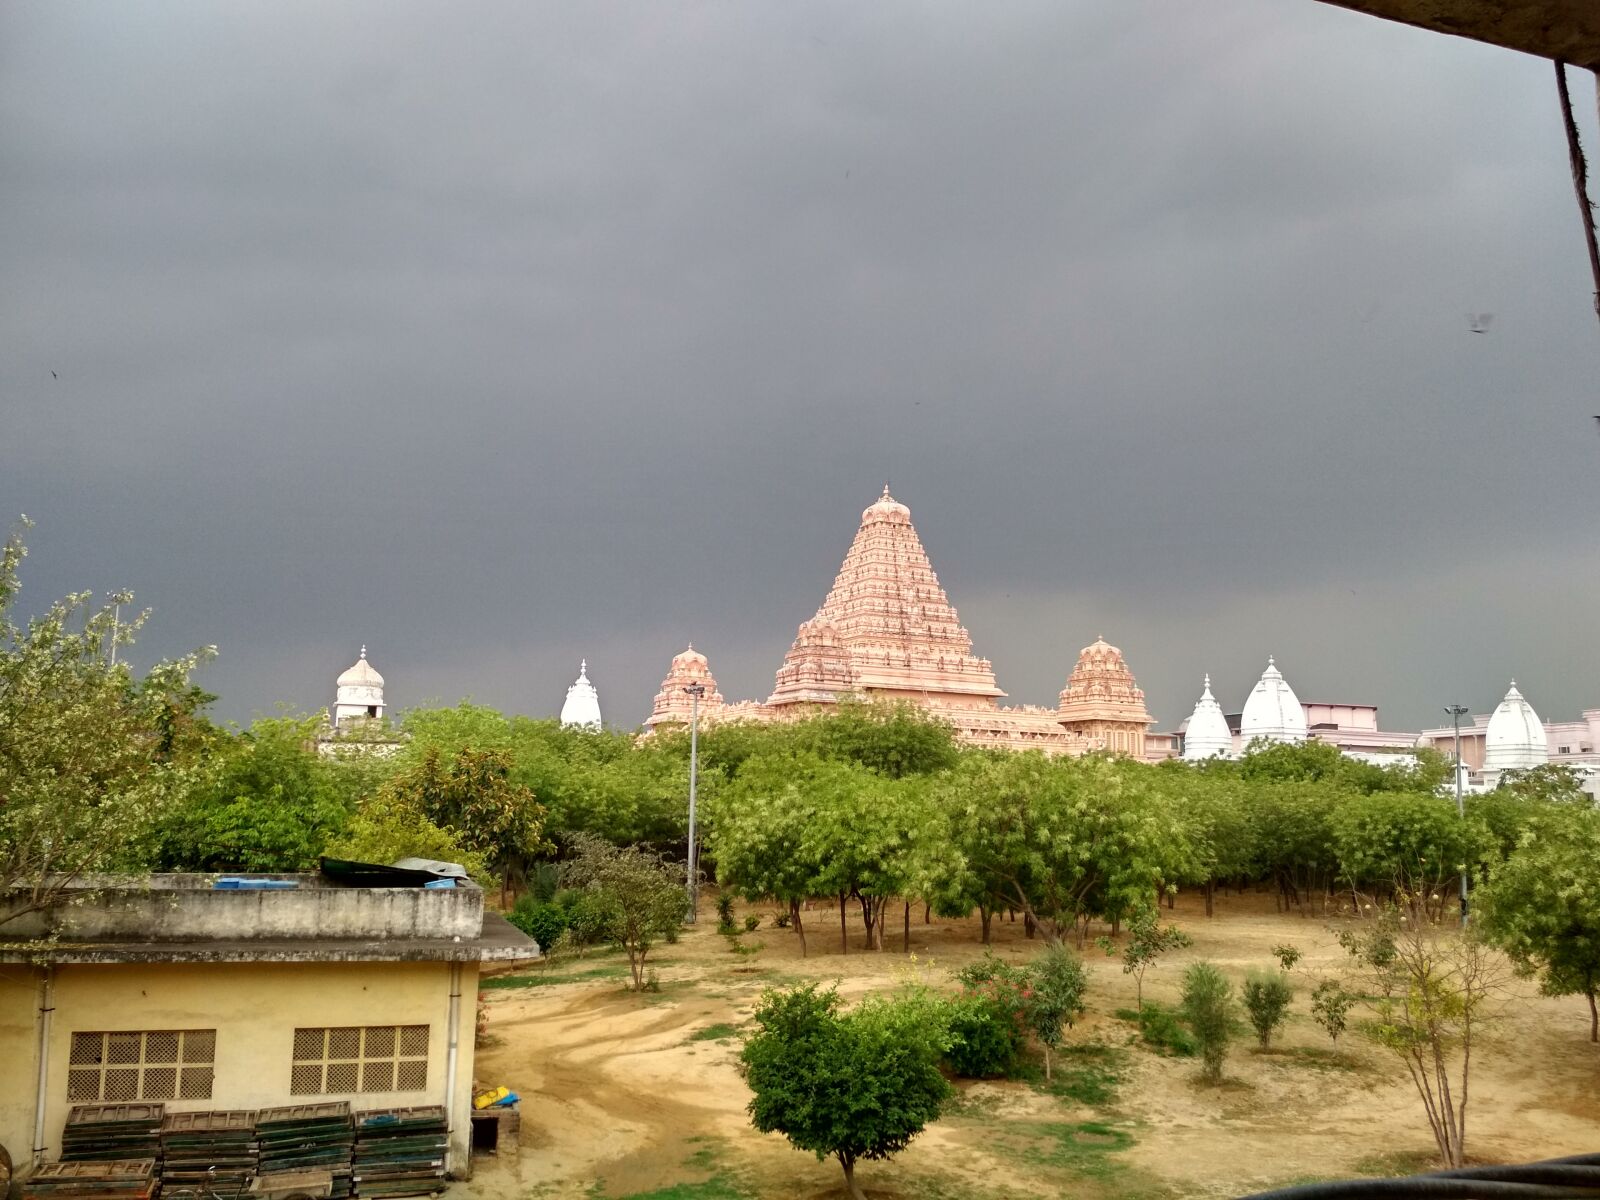 Xiaomi Redmi 4 Pro sample photo. Chhattrpur temple, new delhi photography